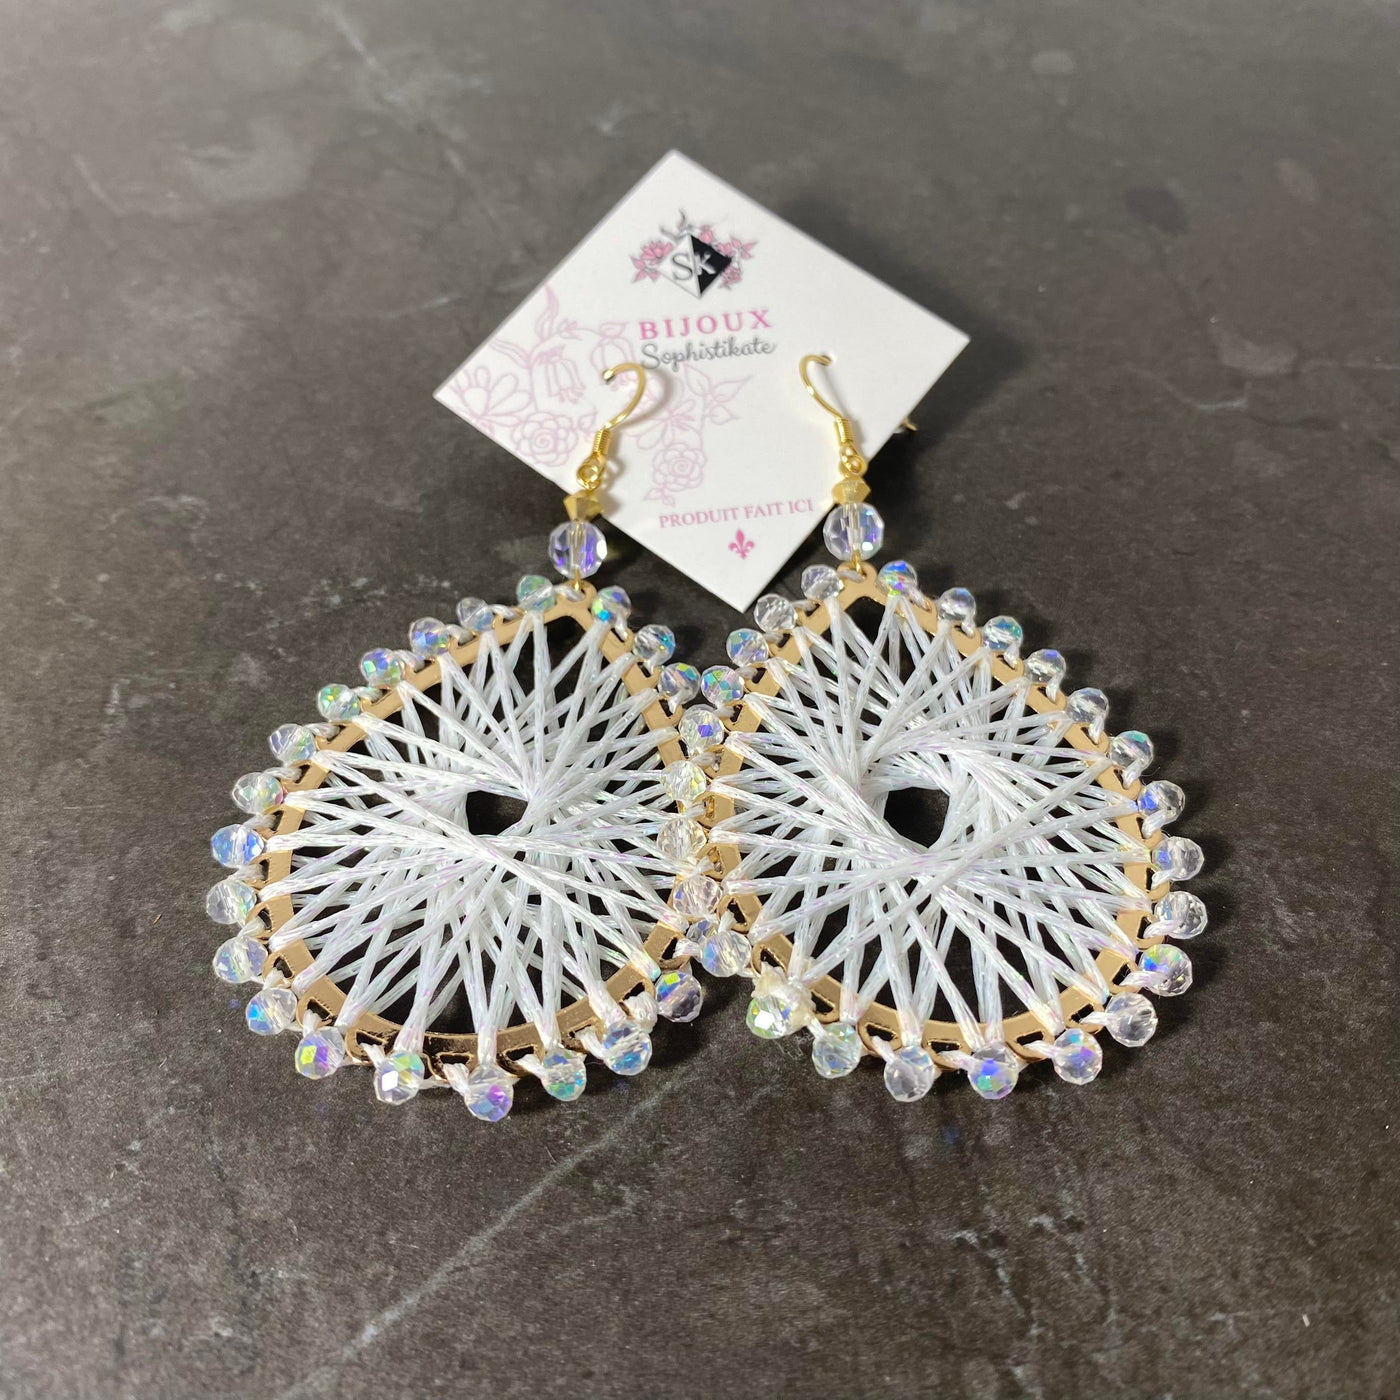 White Ohana earrings